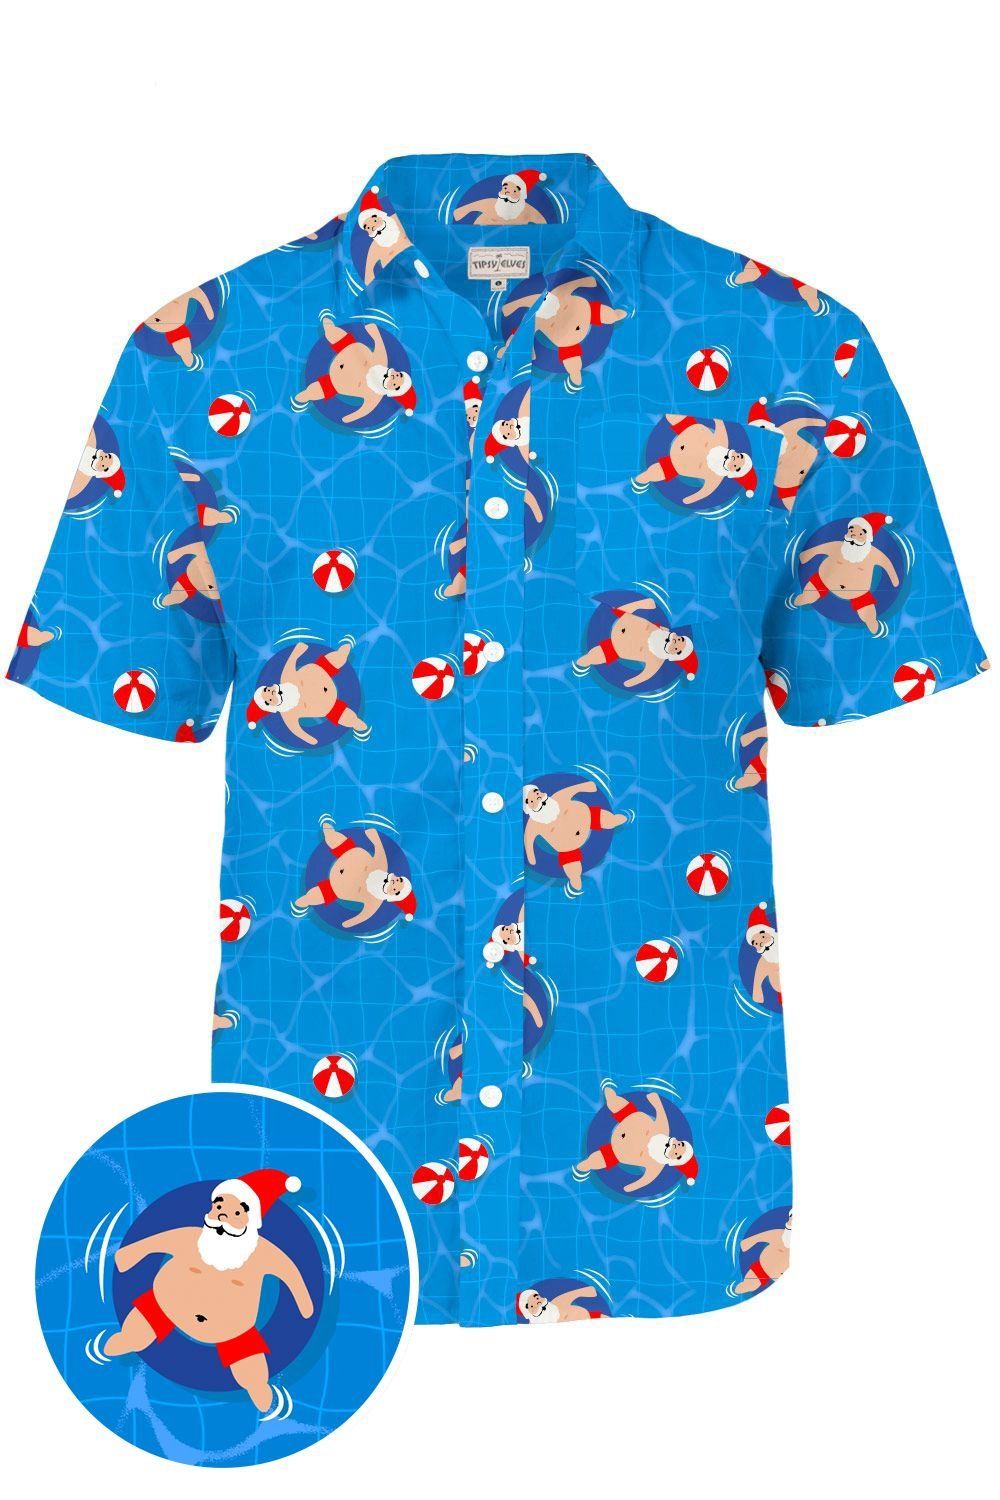 Pool Boy Santa Blue Nice Design Hawaiian Shirt